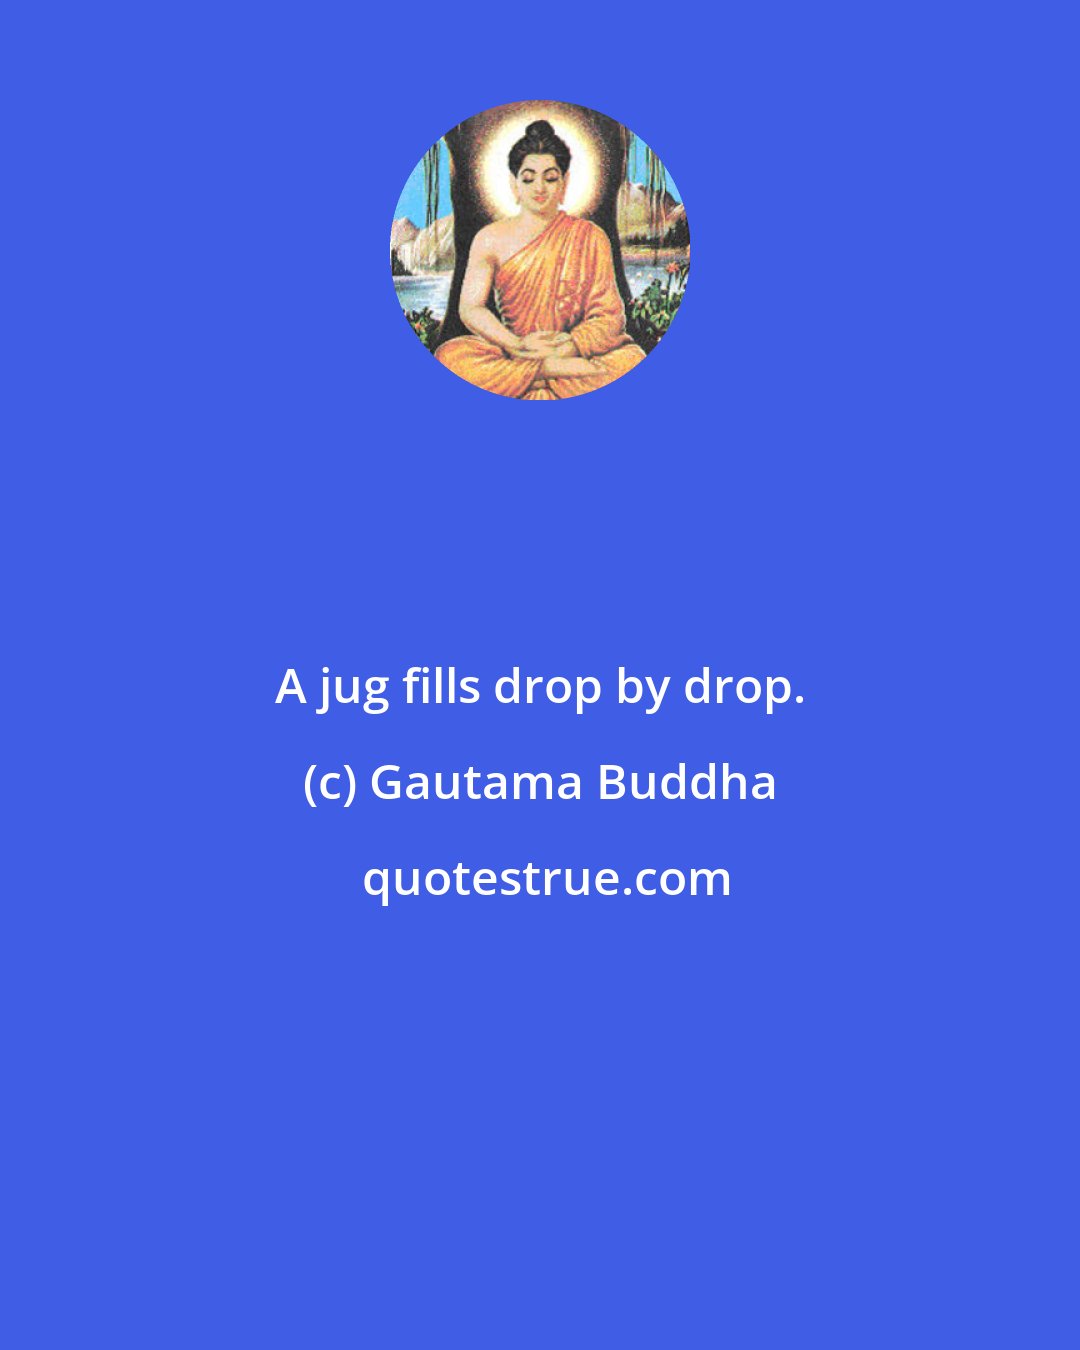 Gautama Buddha: A jug fills drop by drop.